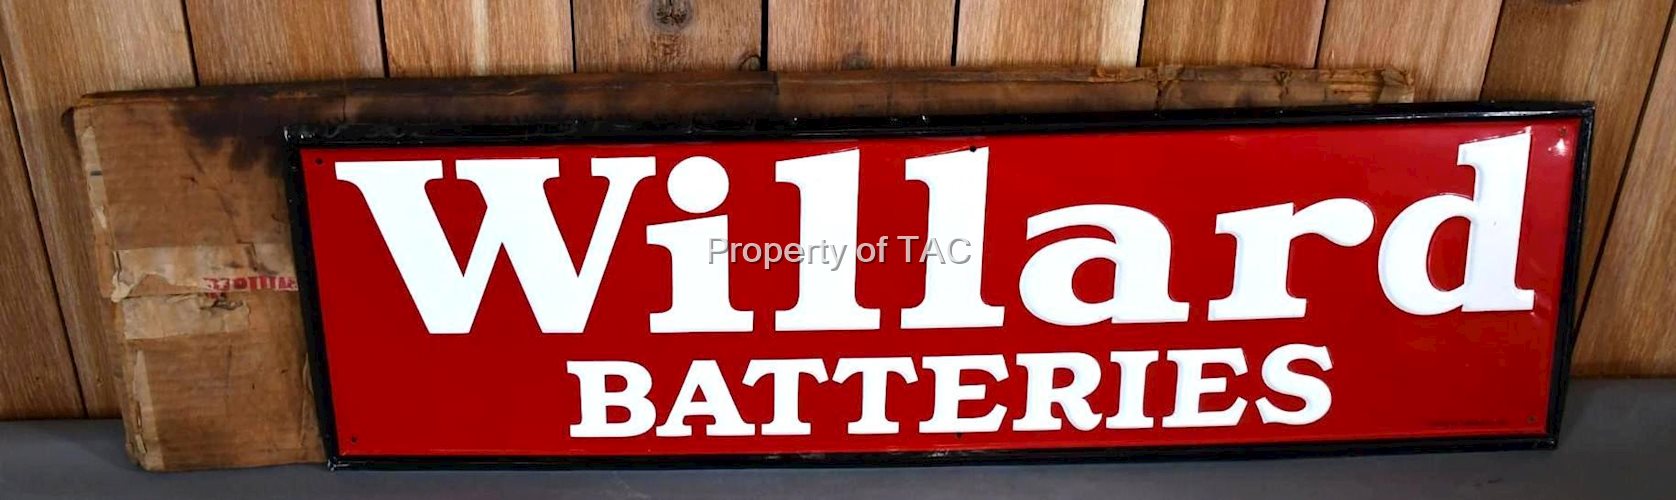 Willard Batteries Metal Sign NIB